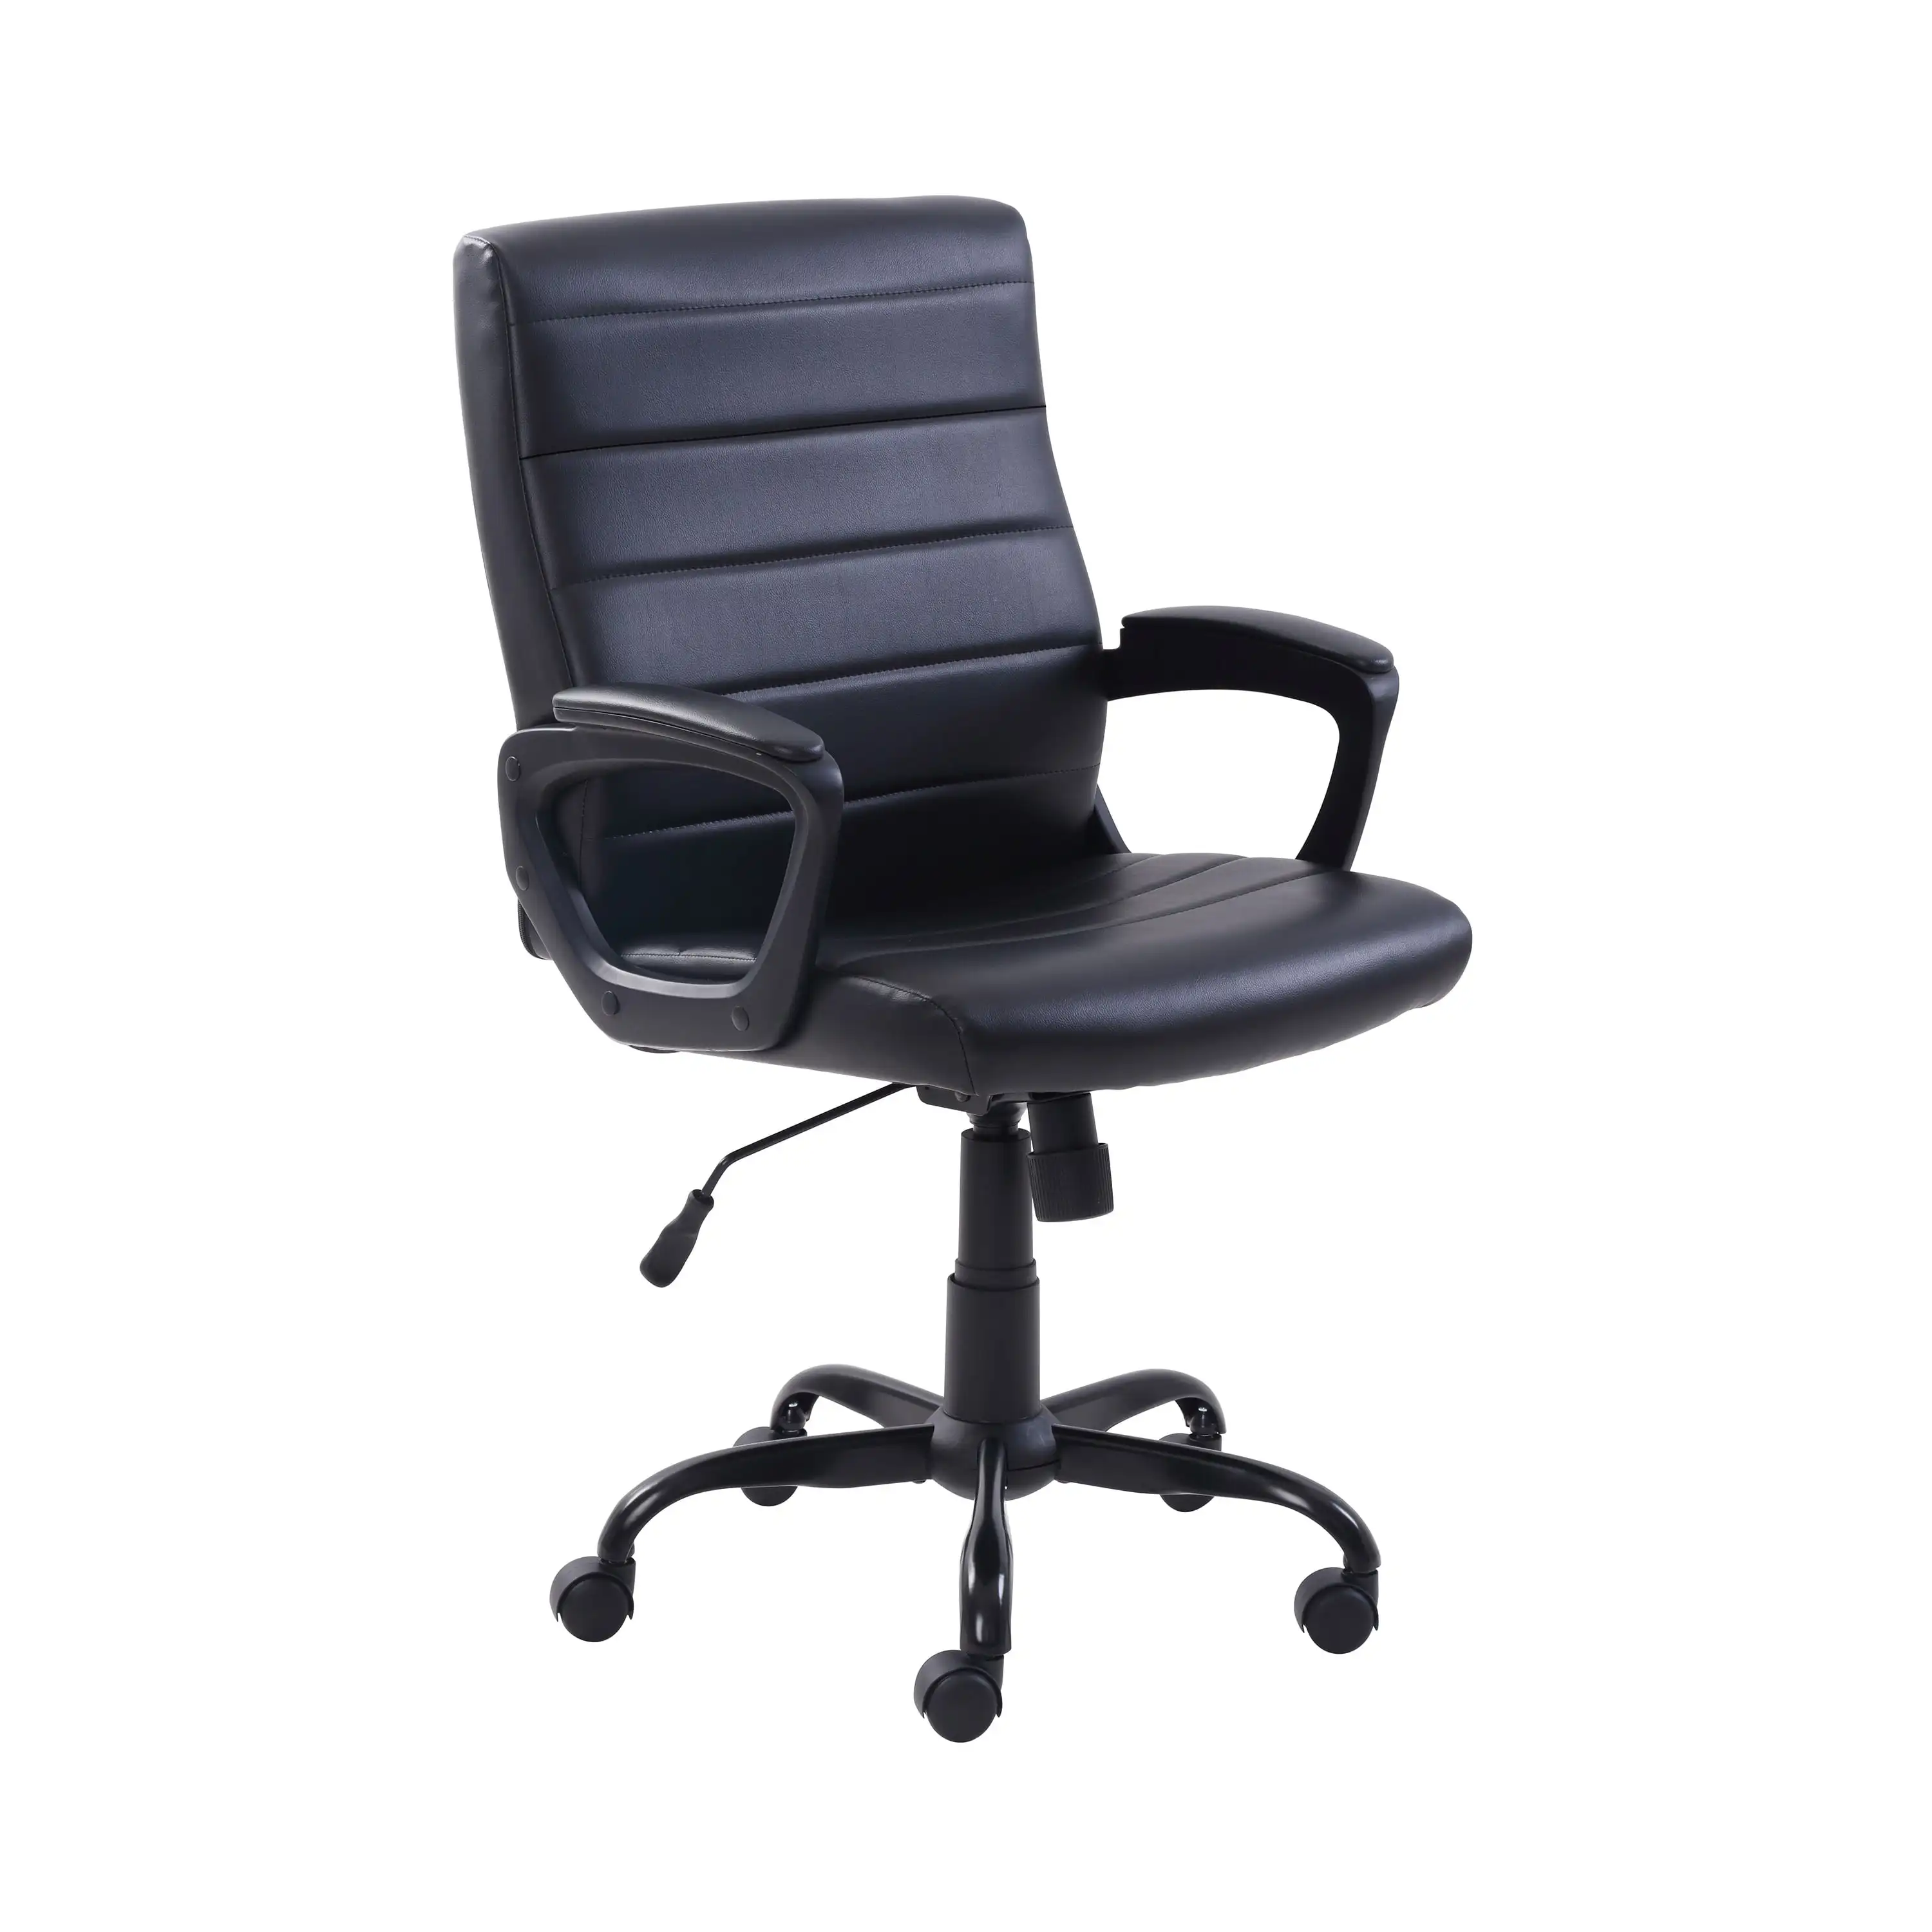 

Офисный стул средней спинки из лакированной кожи для менеджера, несколько отделок